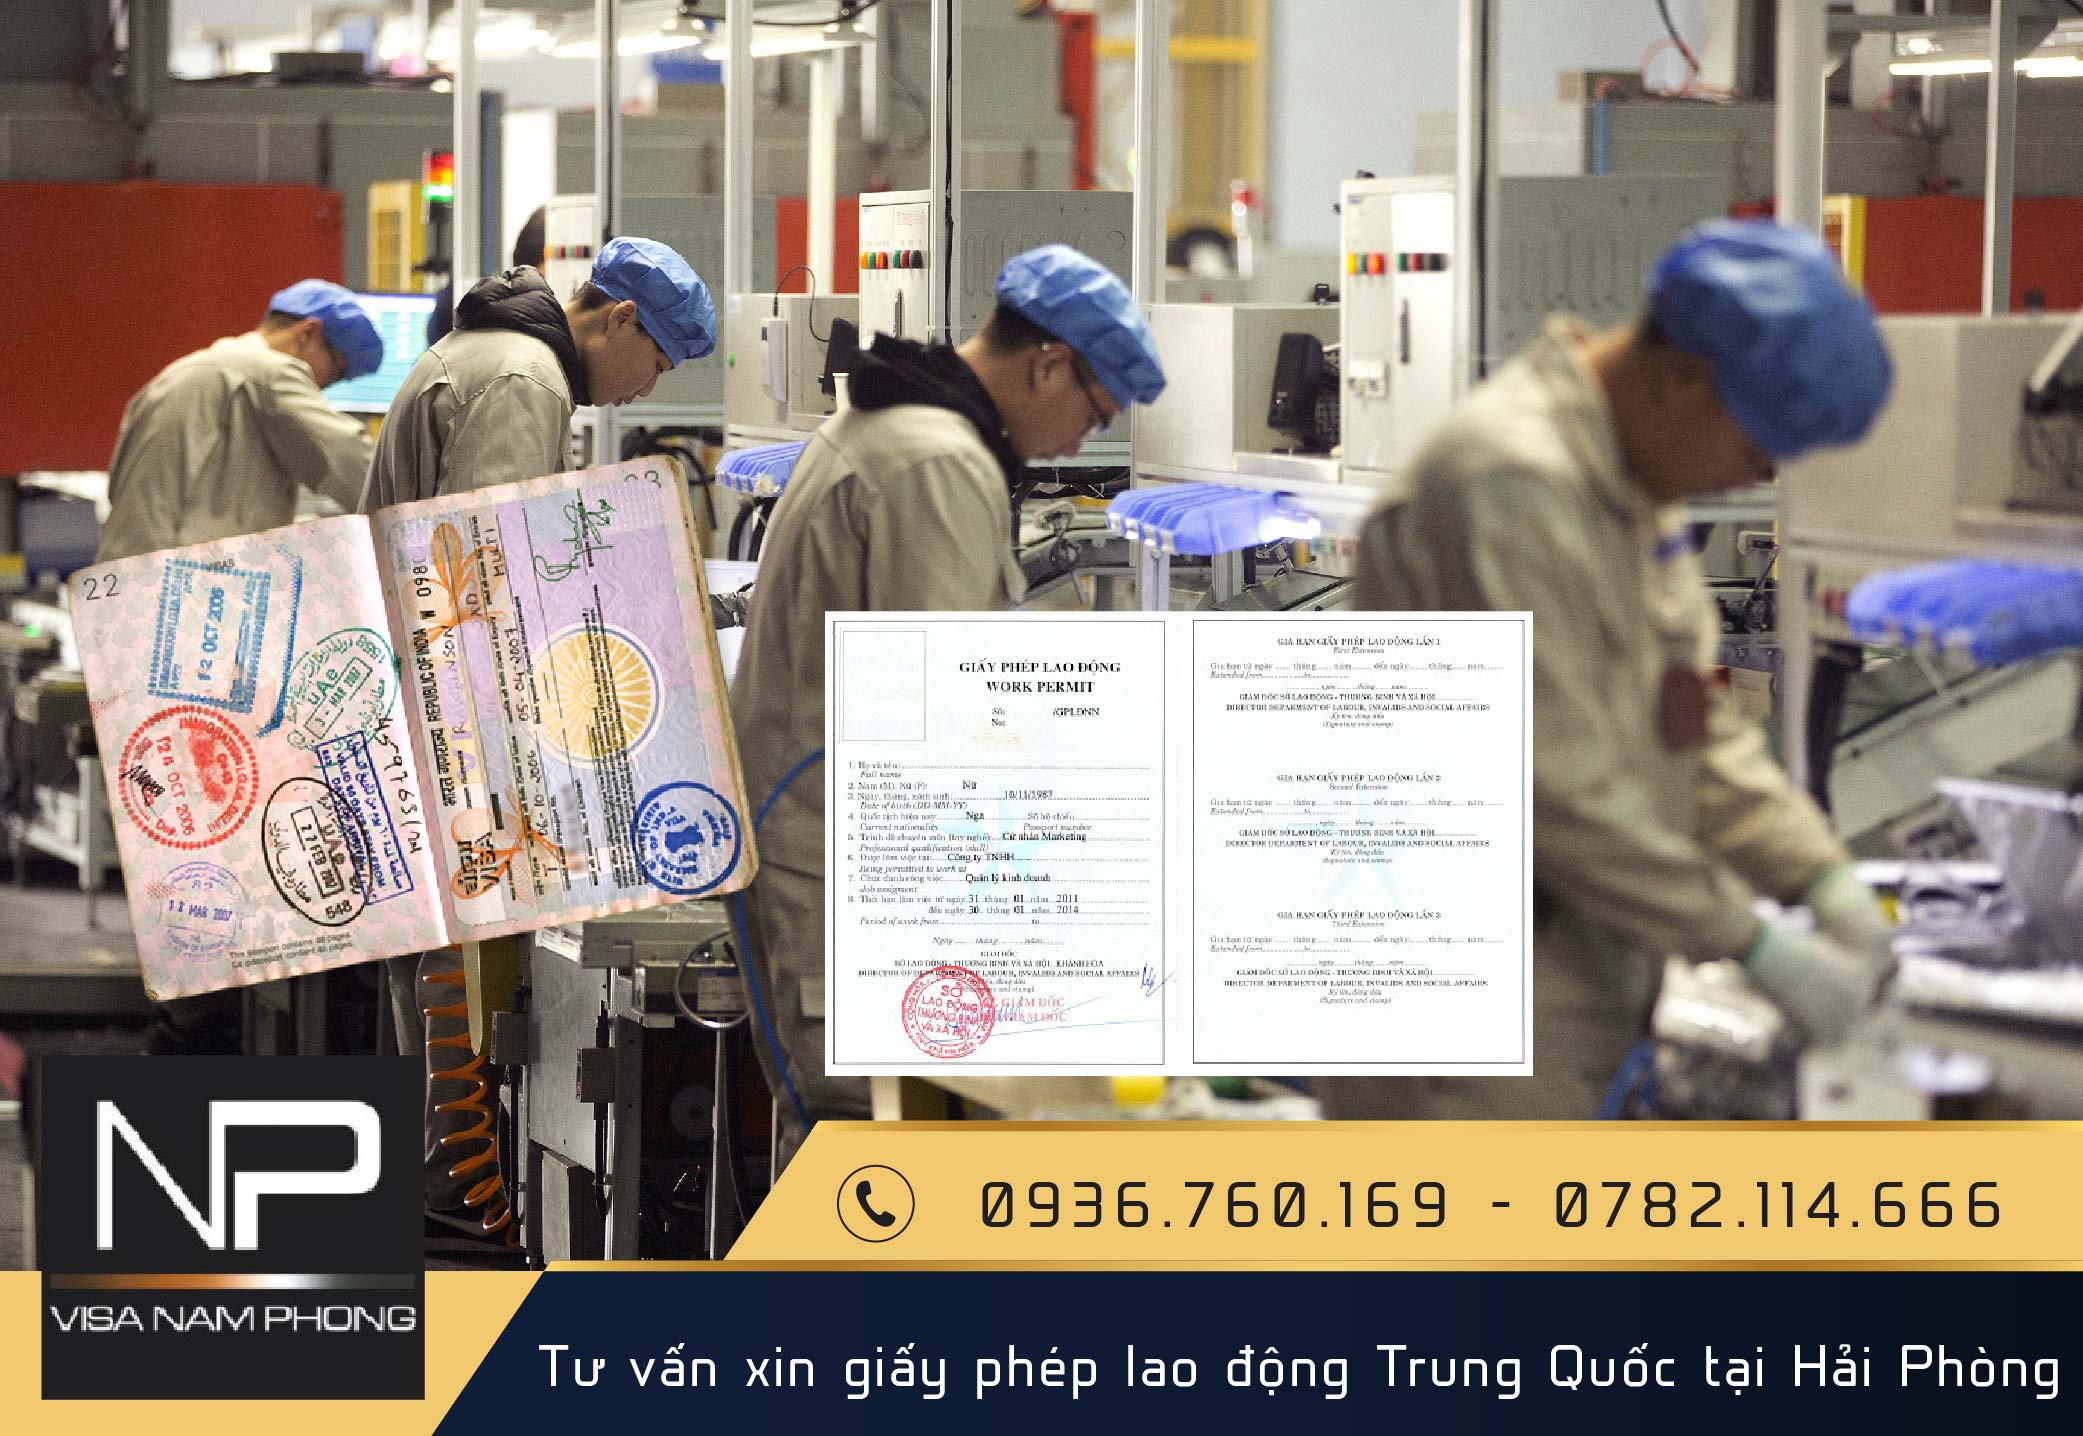 Tư vấn xin giấy phép lao động Trung Quốc tại Hải Phòng